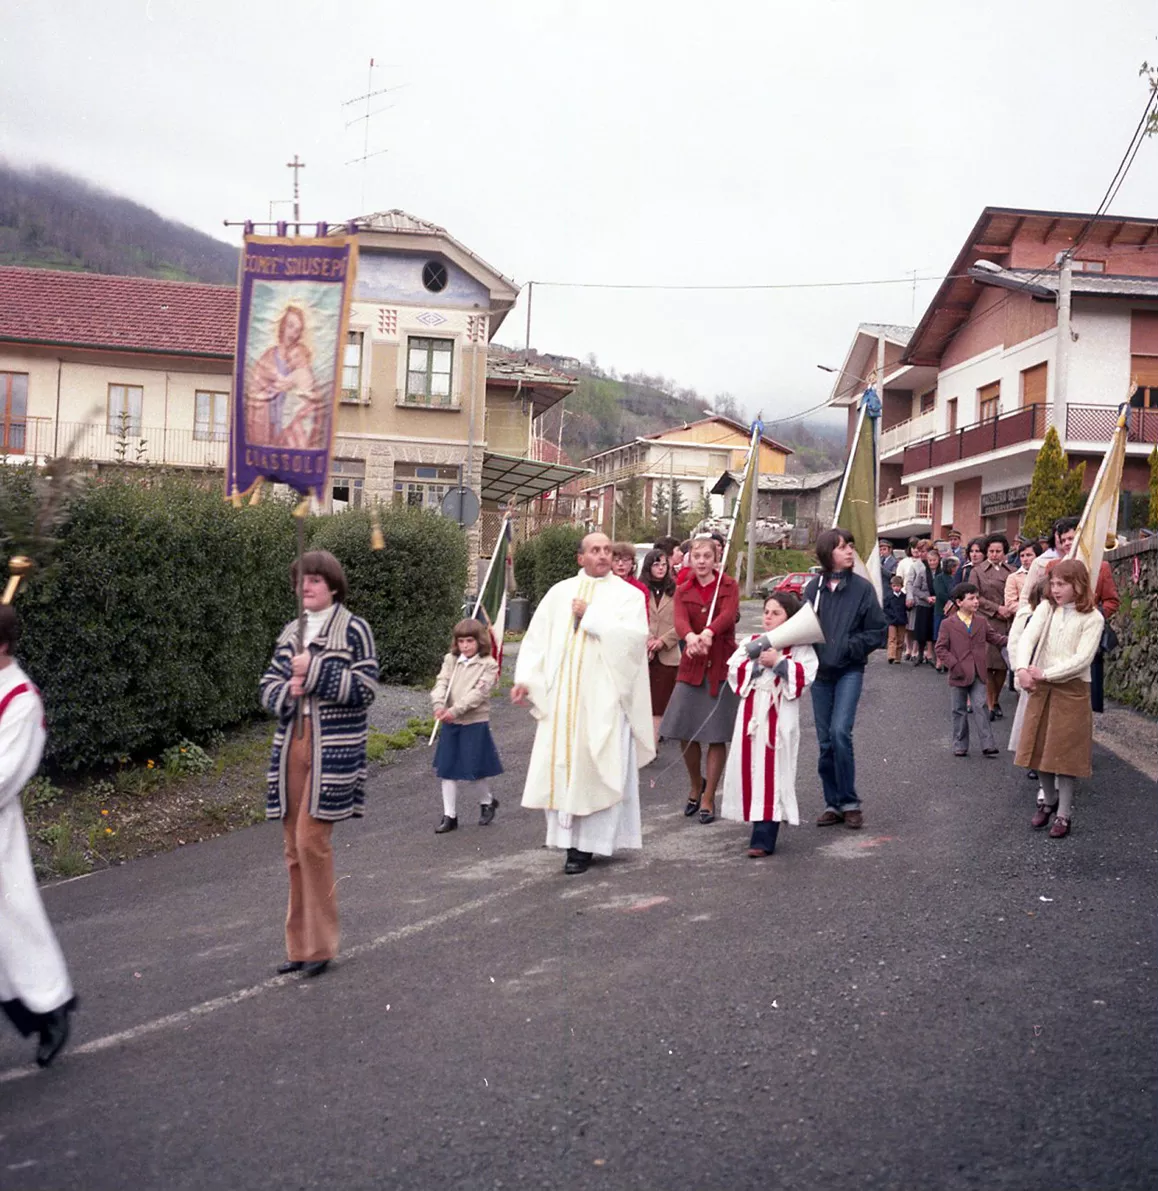 14 - Scolaresche e processioni, part. 5